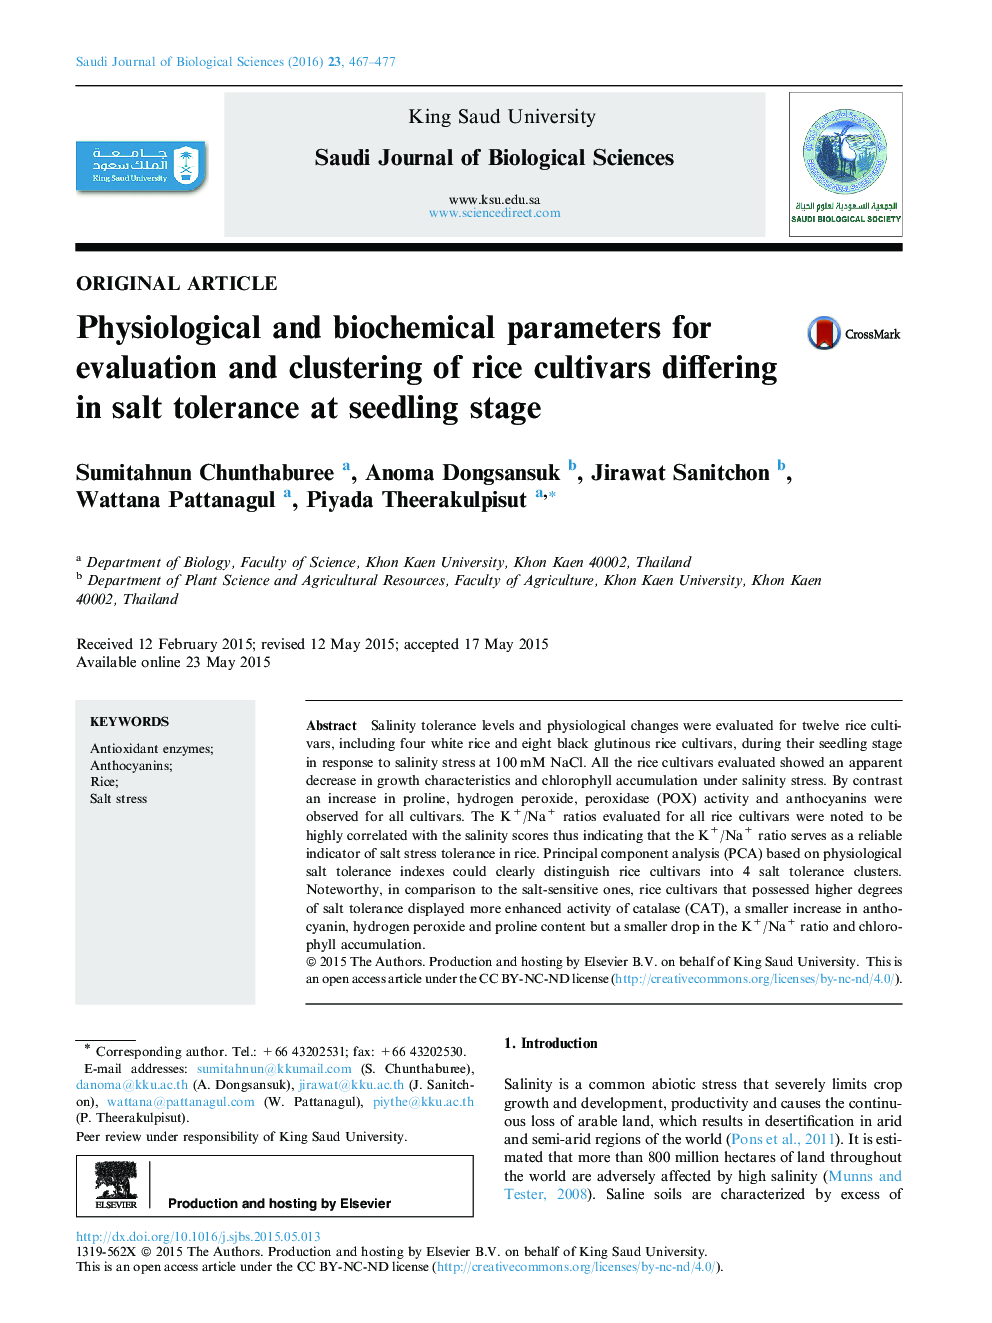 پارامترهای فیزیولوژیکی و بیوشیمیایی برای ارزیابی و خوشه بندی ارقام برنج که در مرحله تحمل به شوری تفاوت دارند 